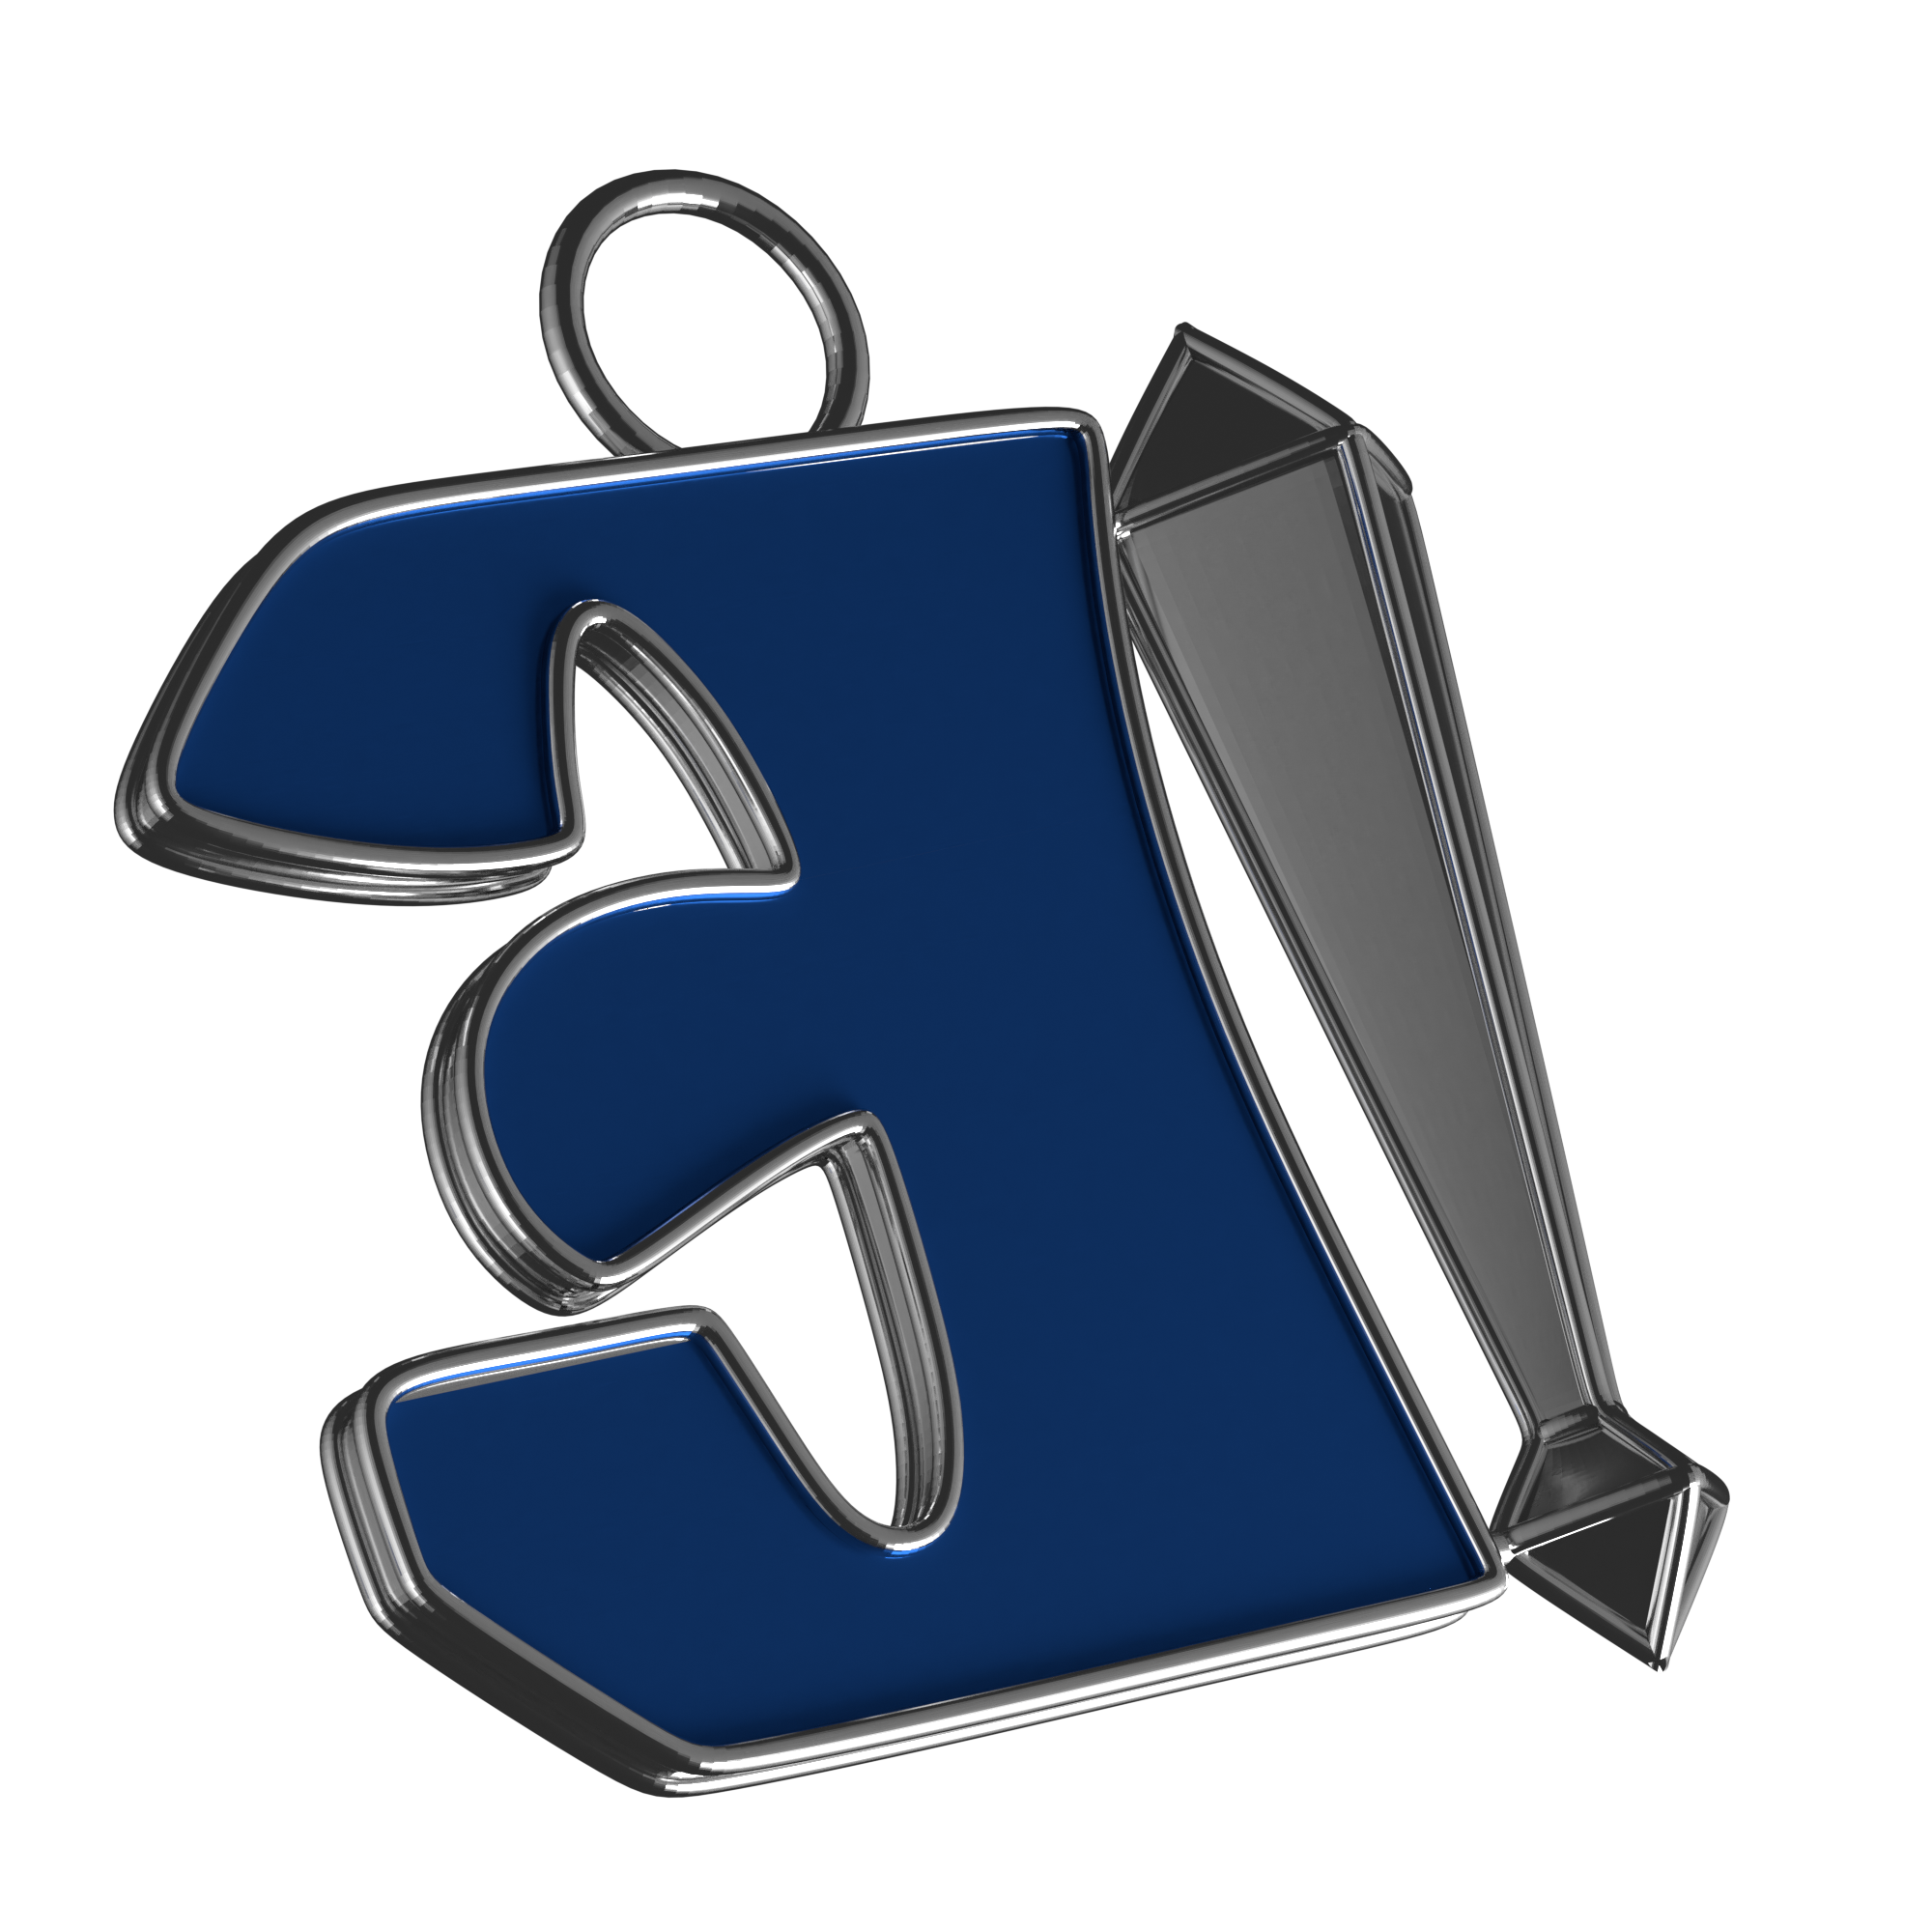 Immagine in basso a sinistra del portachiavi Singolar Key. Il portachiavi rappresenta una E al contrario smaltata di blu con un punto esclamativo affianco placcato d'argento.